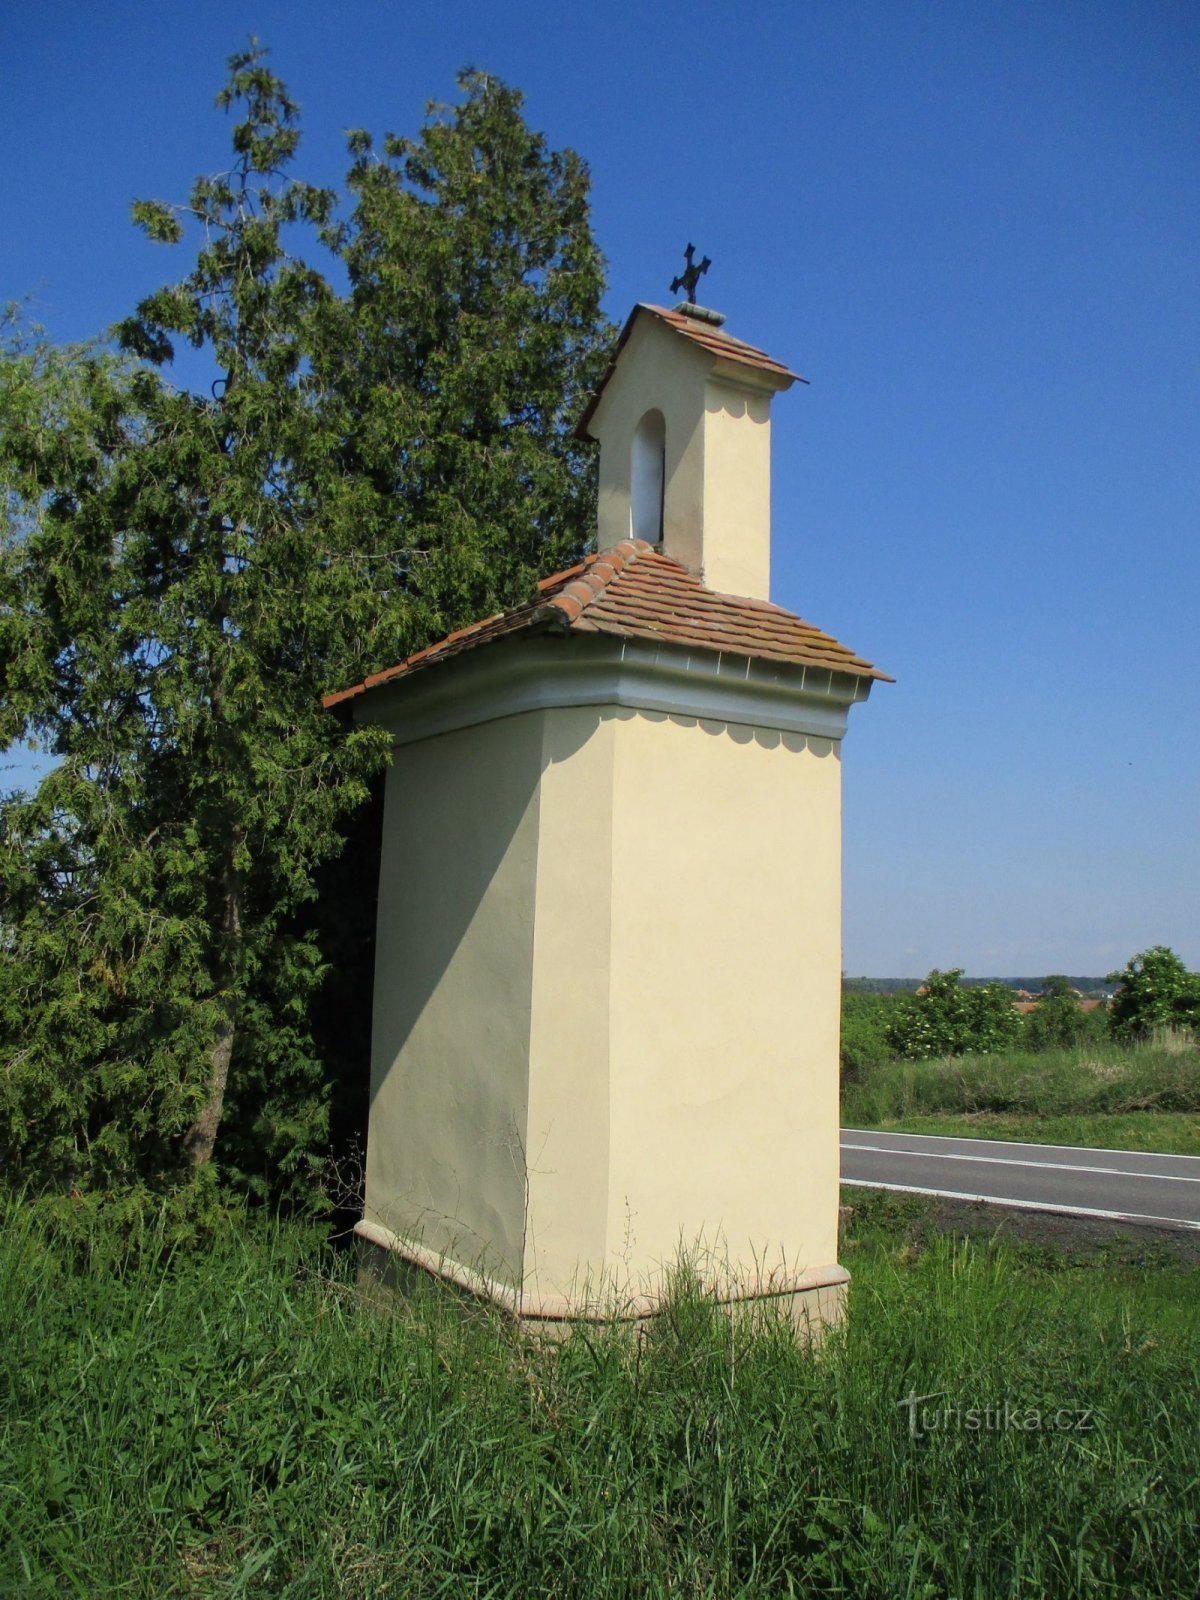 Capela de lângă drumul de la Holice (Horní Ředice, 16.5.2020)